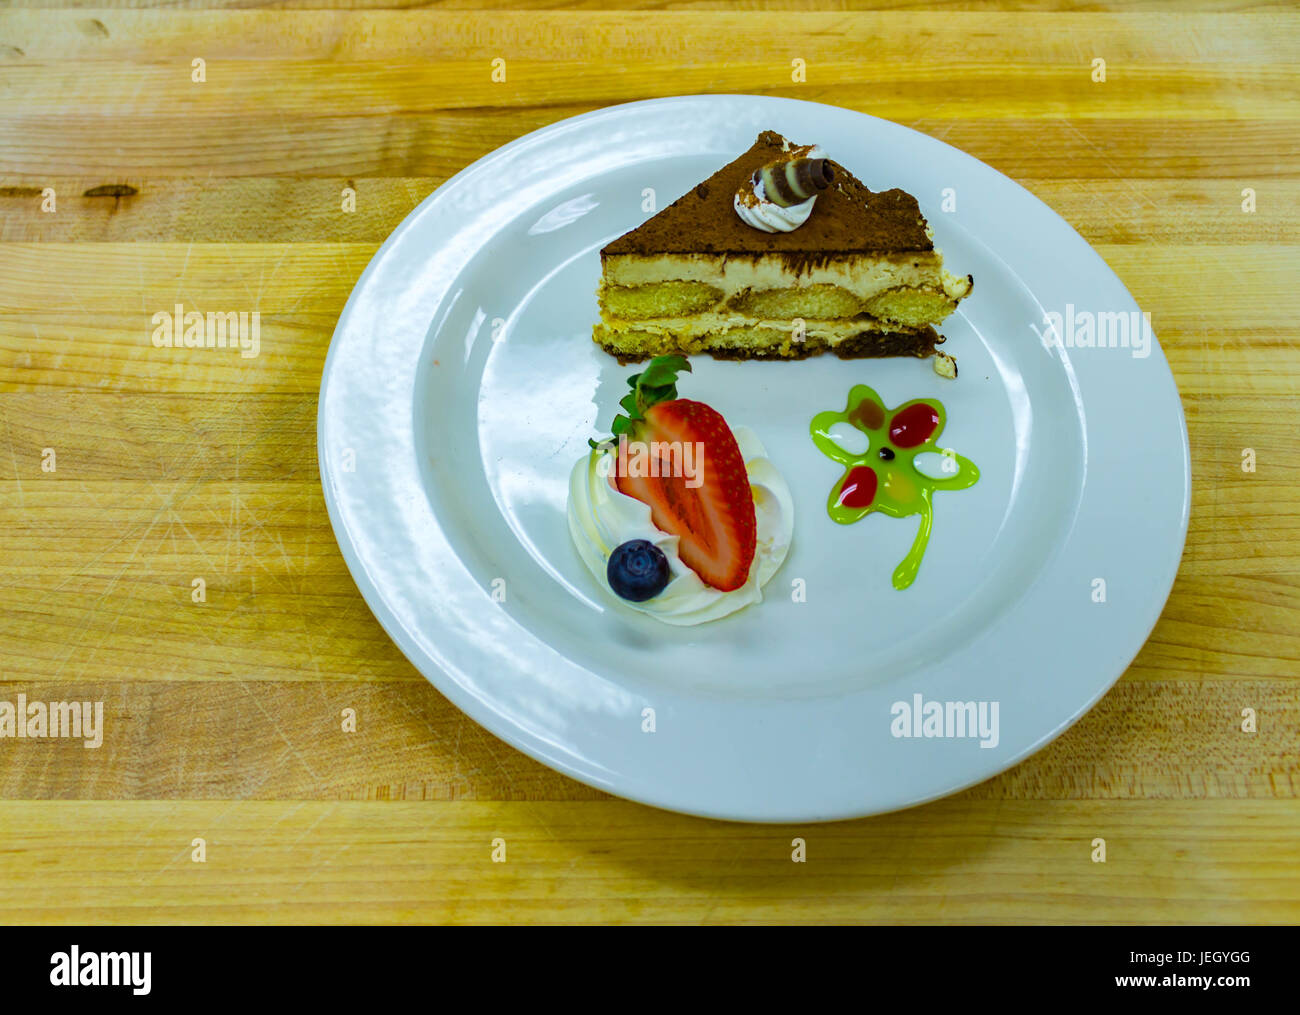 Il tiramisù dessert su piastra bianca con frutta Foto Stock